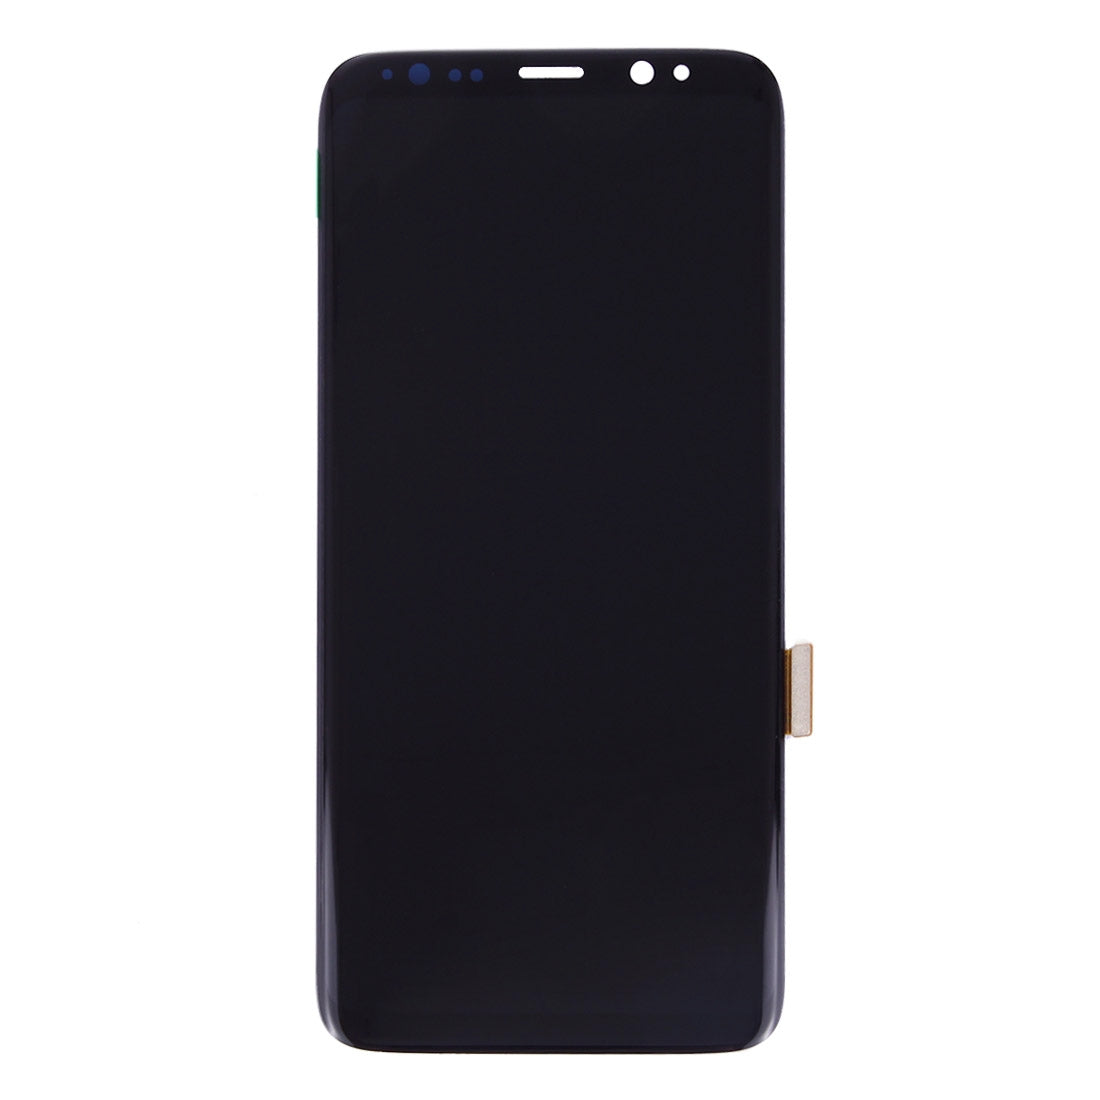 Pantalla LCD + Tactil Digitalizador Samsung Galaxy S8 G950 Negro